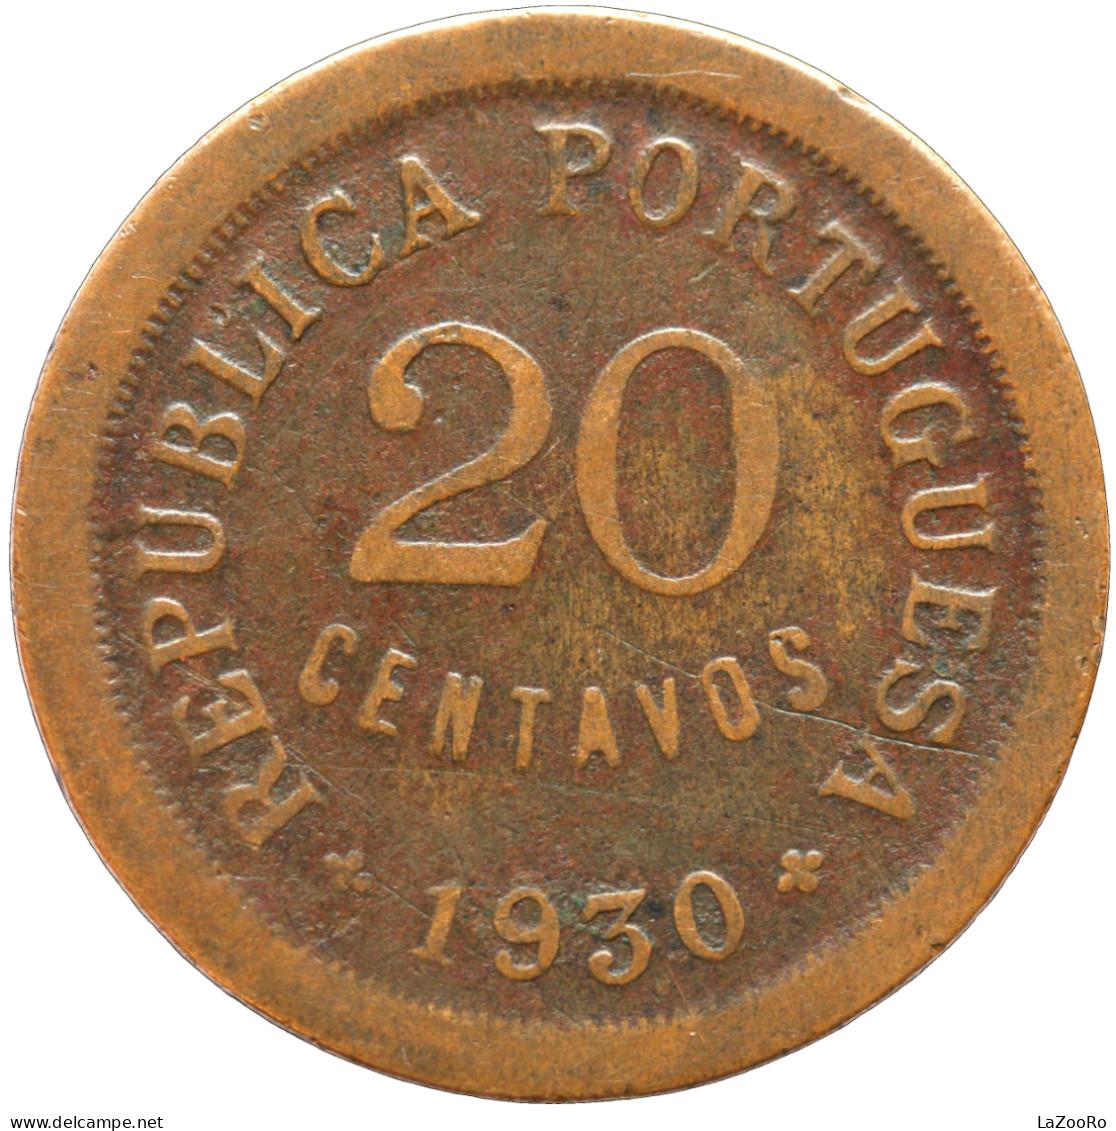 LaZooRo: Portuguese Cape Verde 20 Centavos 1930 VF - Cap Verde